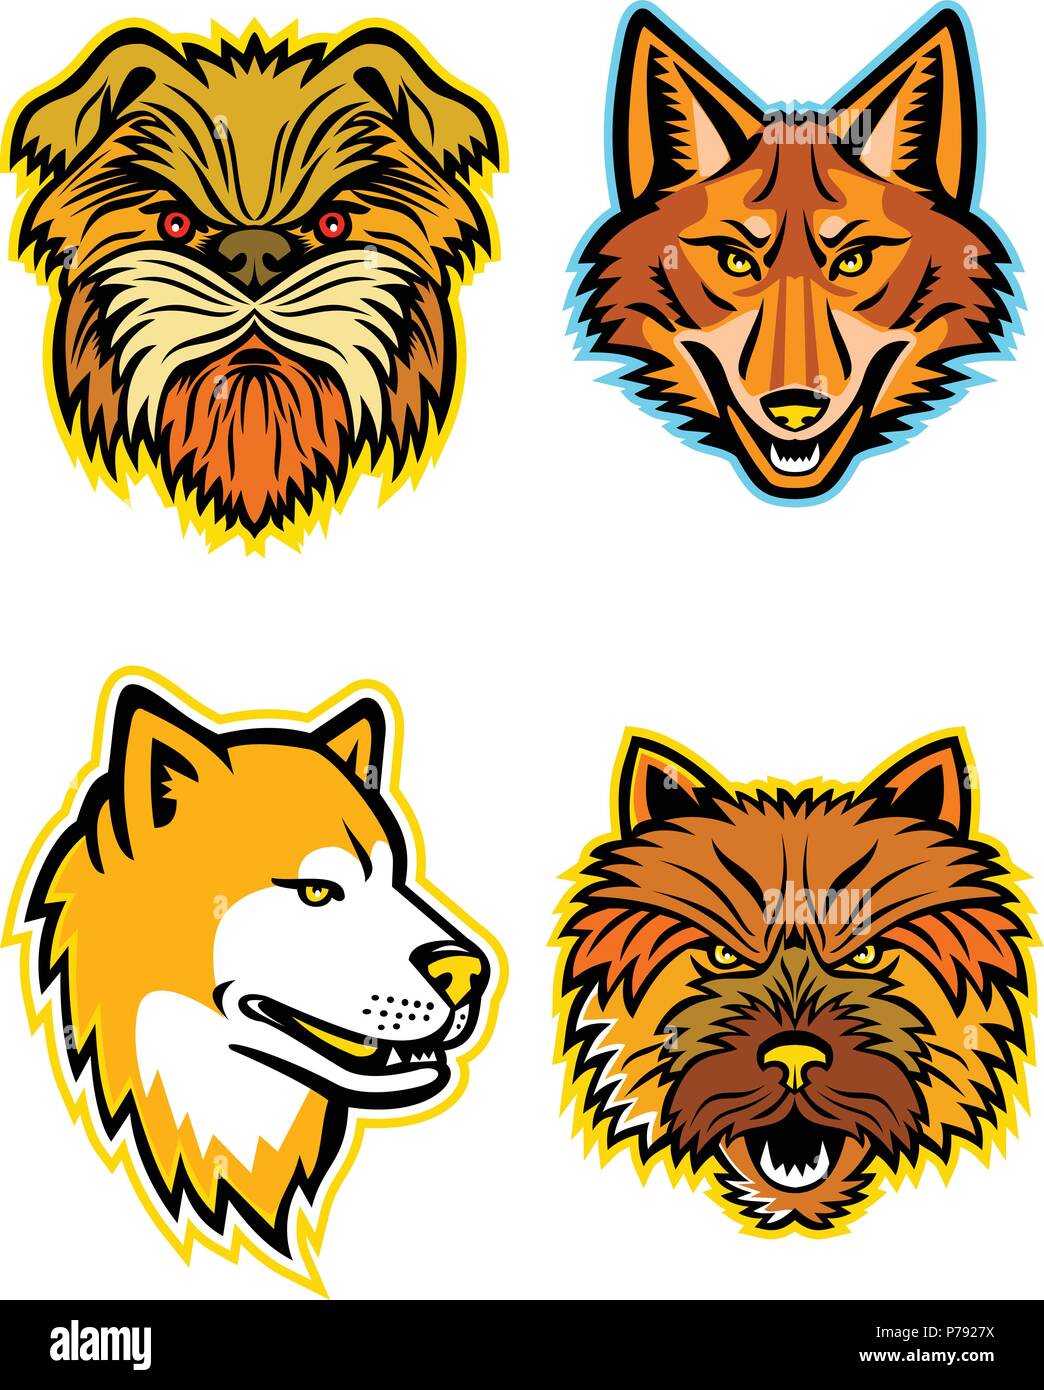 Maskottchen Symbol Abbildung der Staats Terrier und Wölfe oder Caniden, wie die Terrier Hund oder Affe Terrier, Kojote, Wolf, coydog oder wilde tun Stock Vektor